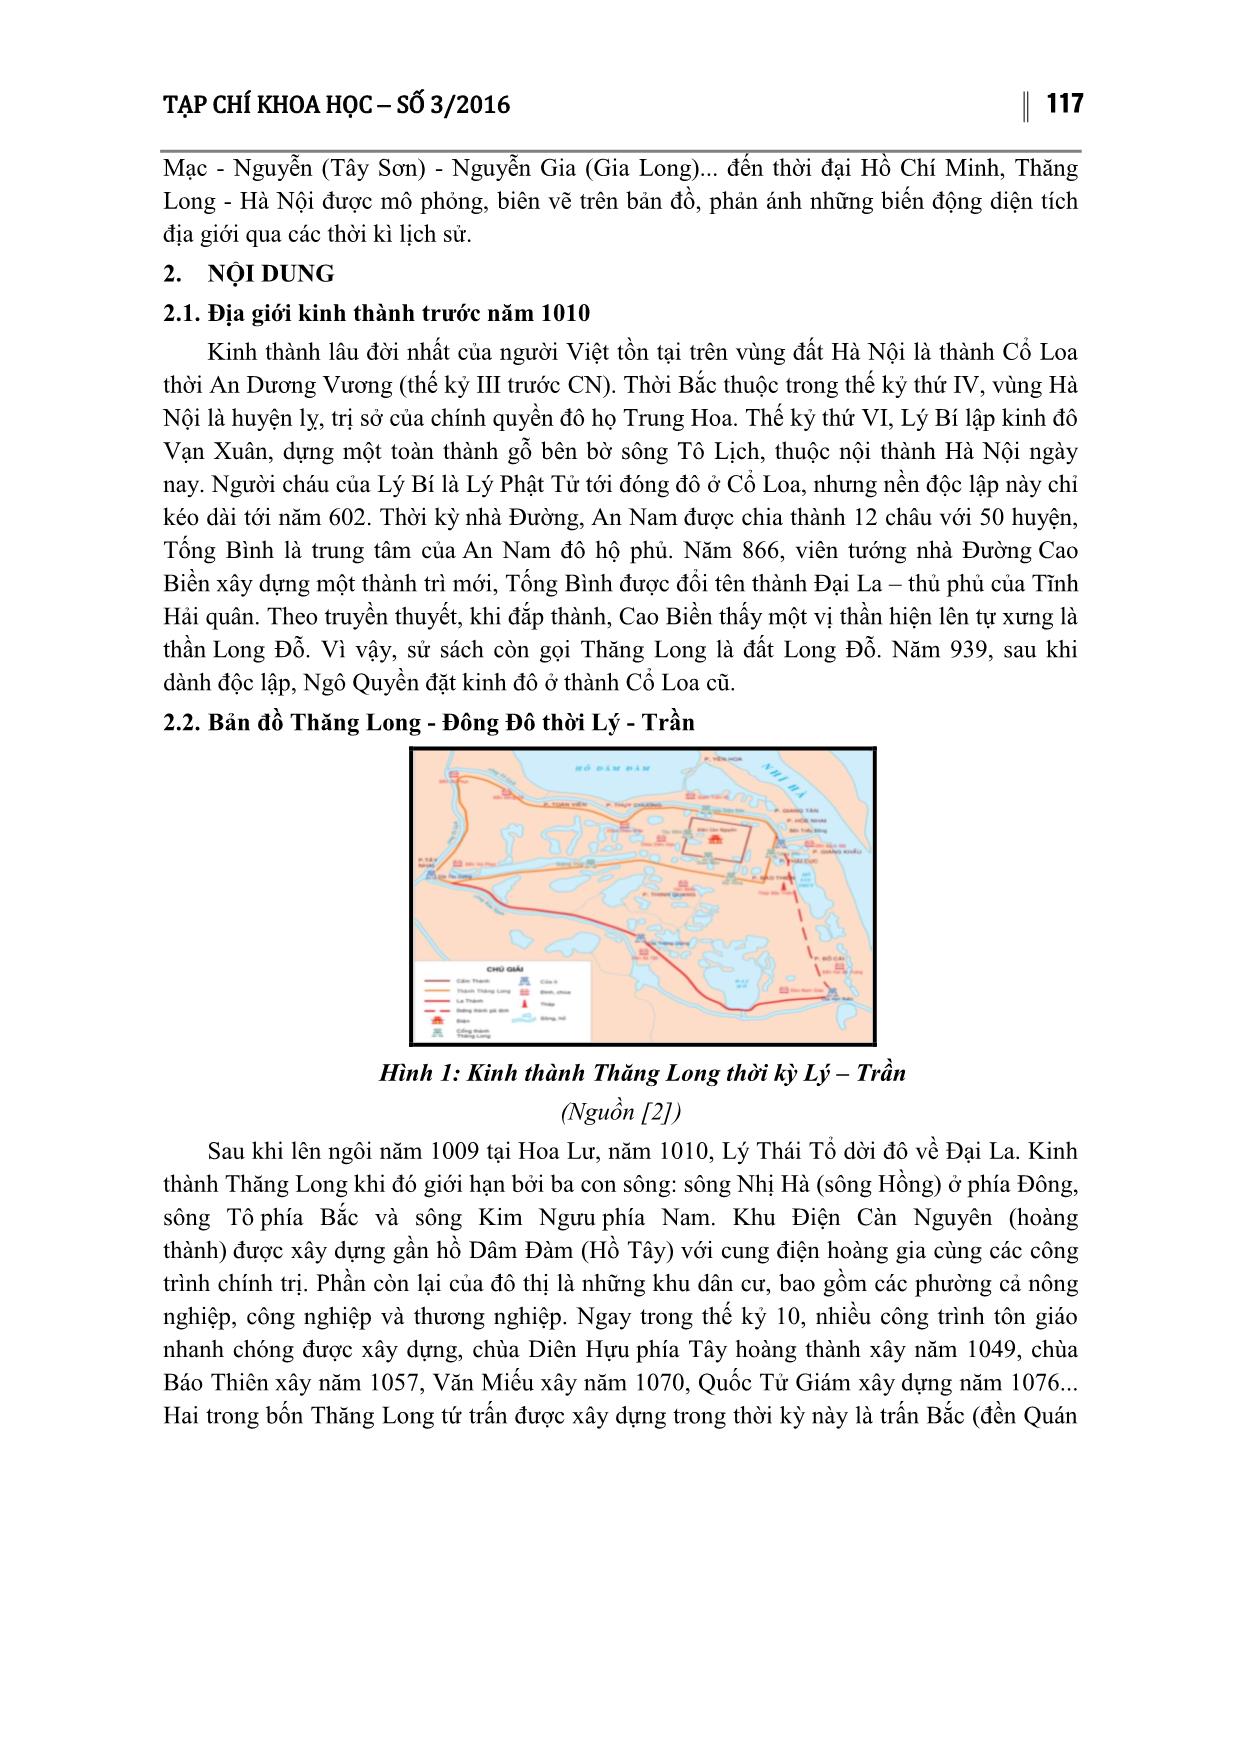 Biến động địa giới thành phố Hà Nội qua các thời kỳ lịch sử trang 2